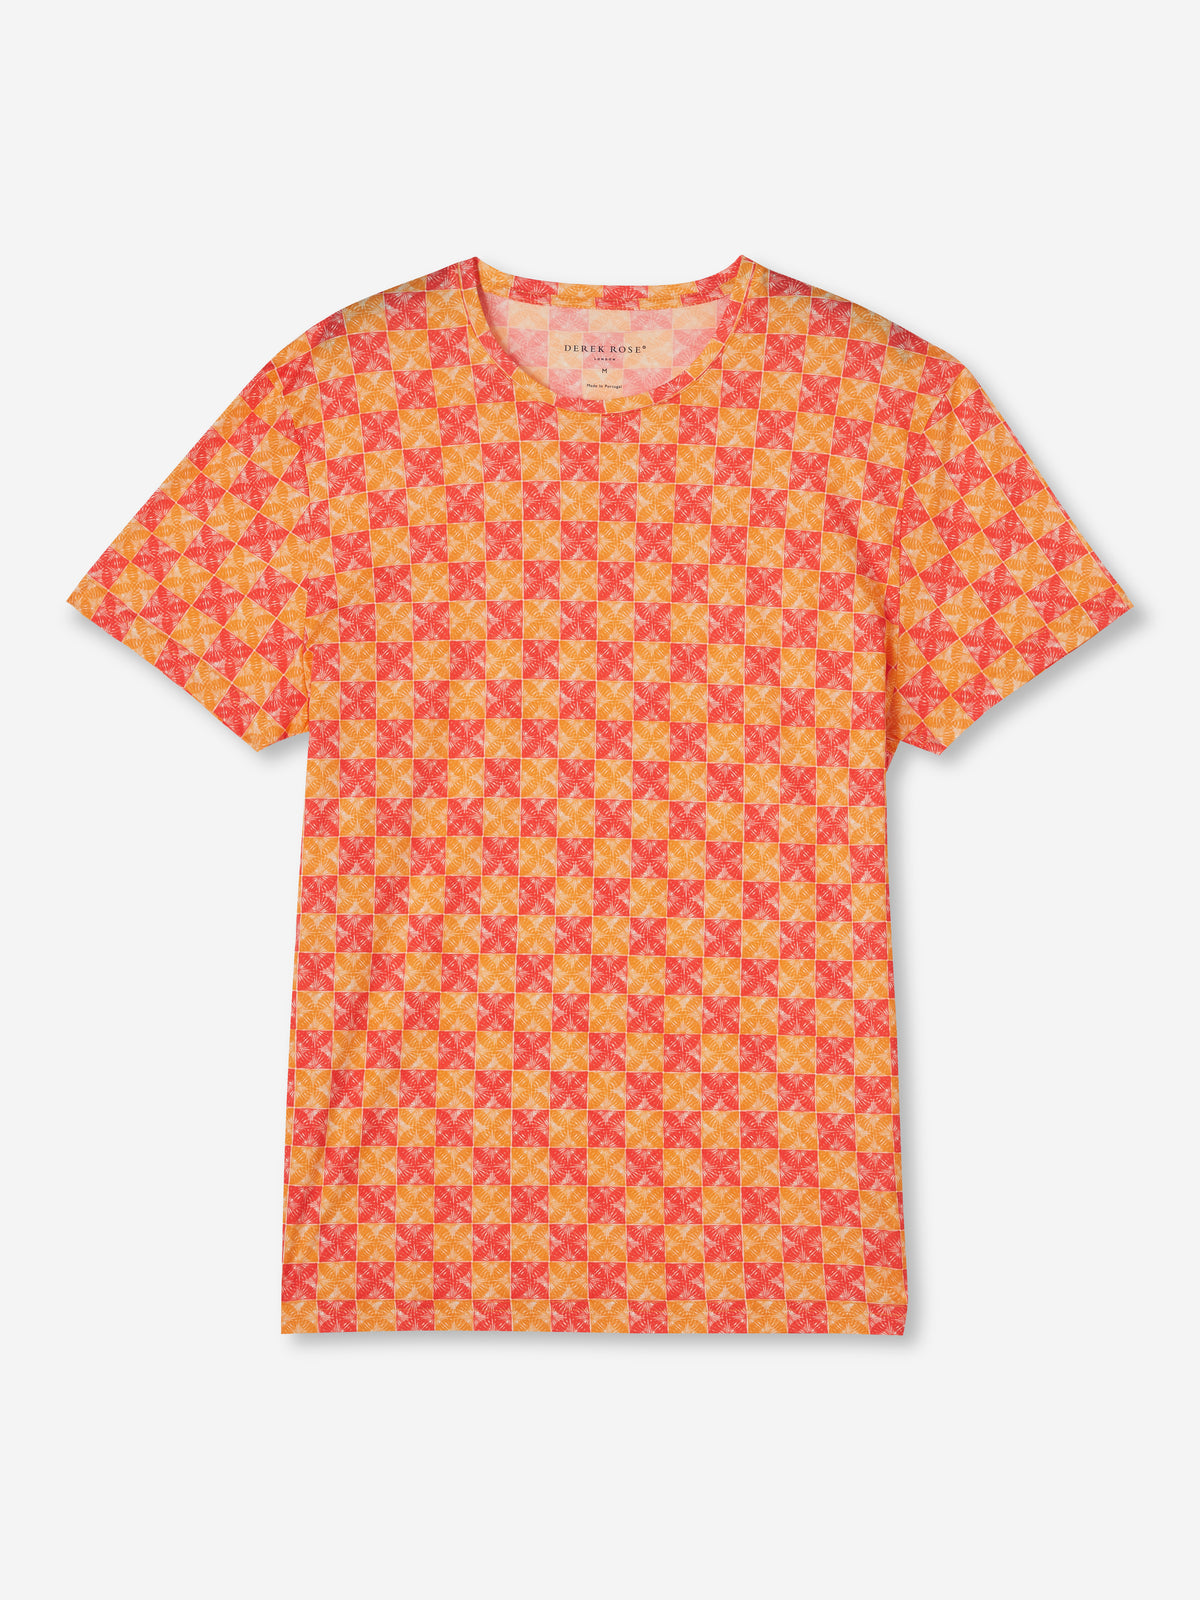 Men's T-Shirt Robin 10 Pima Cotton Multi